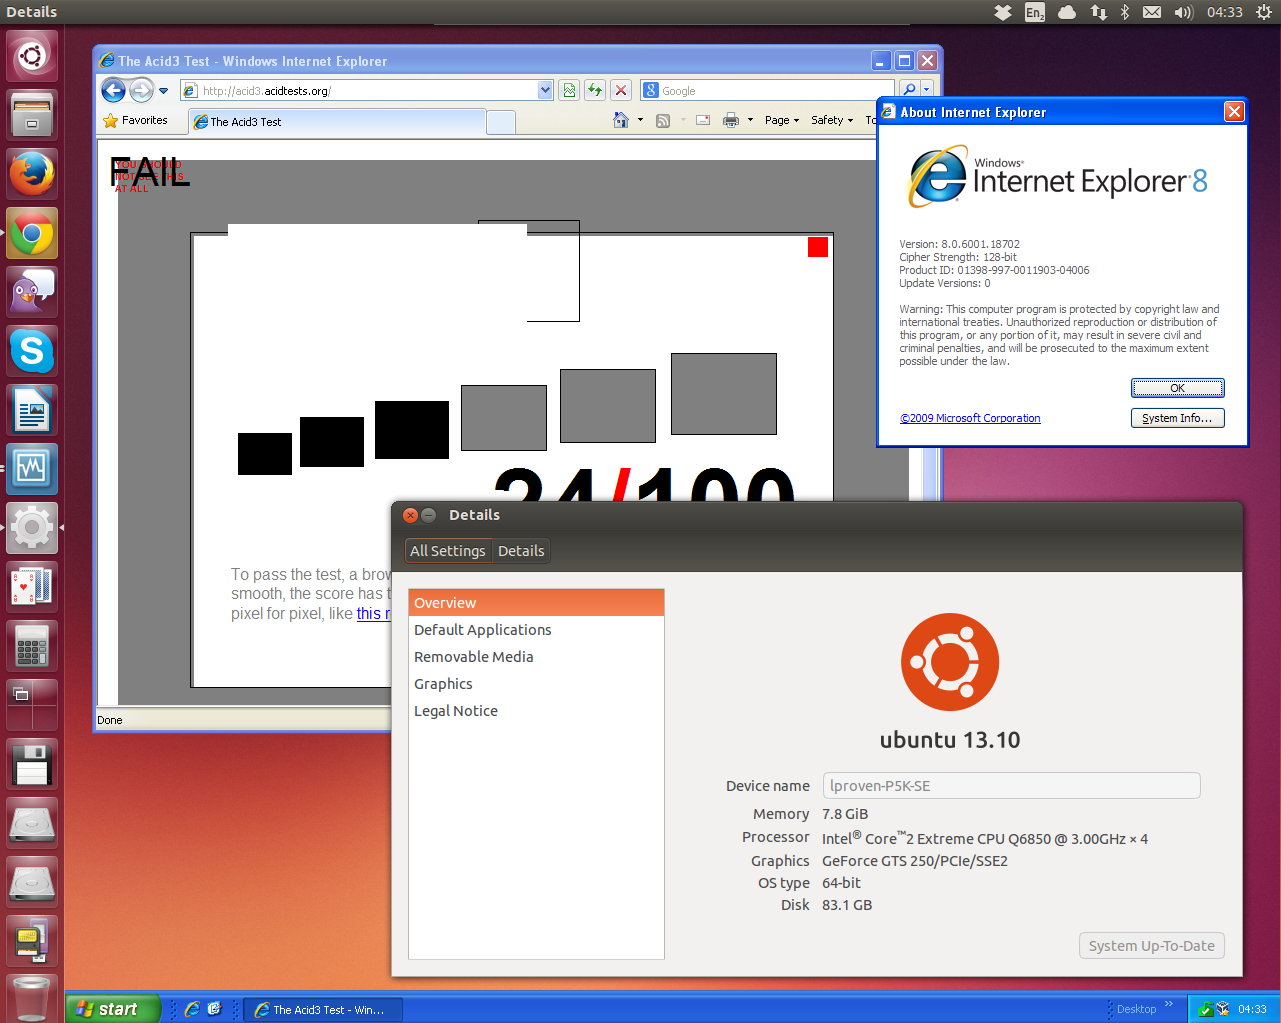 Windows XP on Ubuntu in perfect harmony